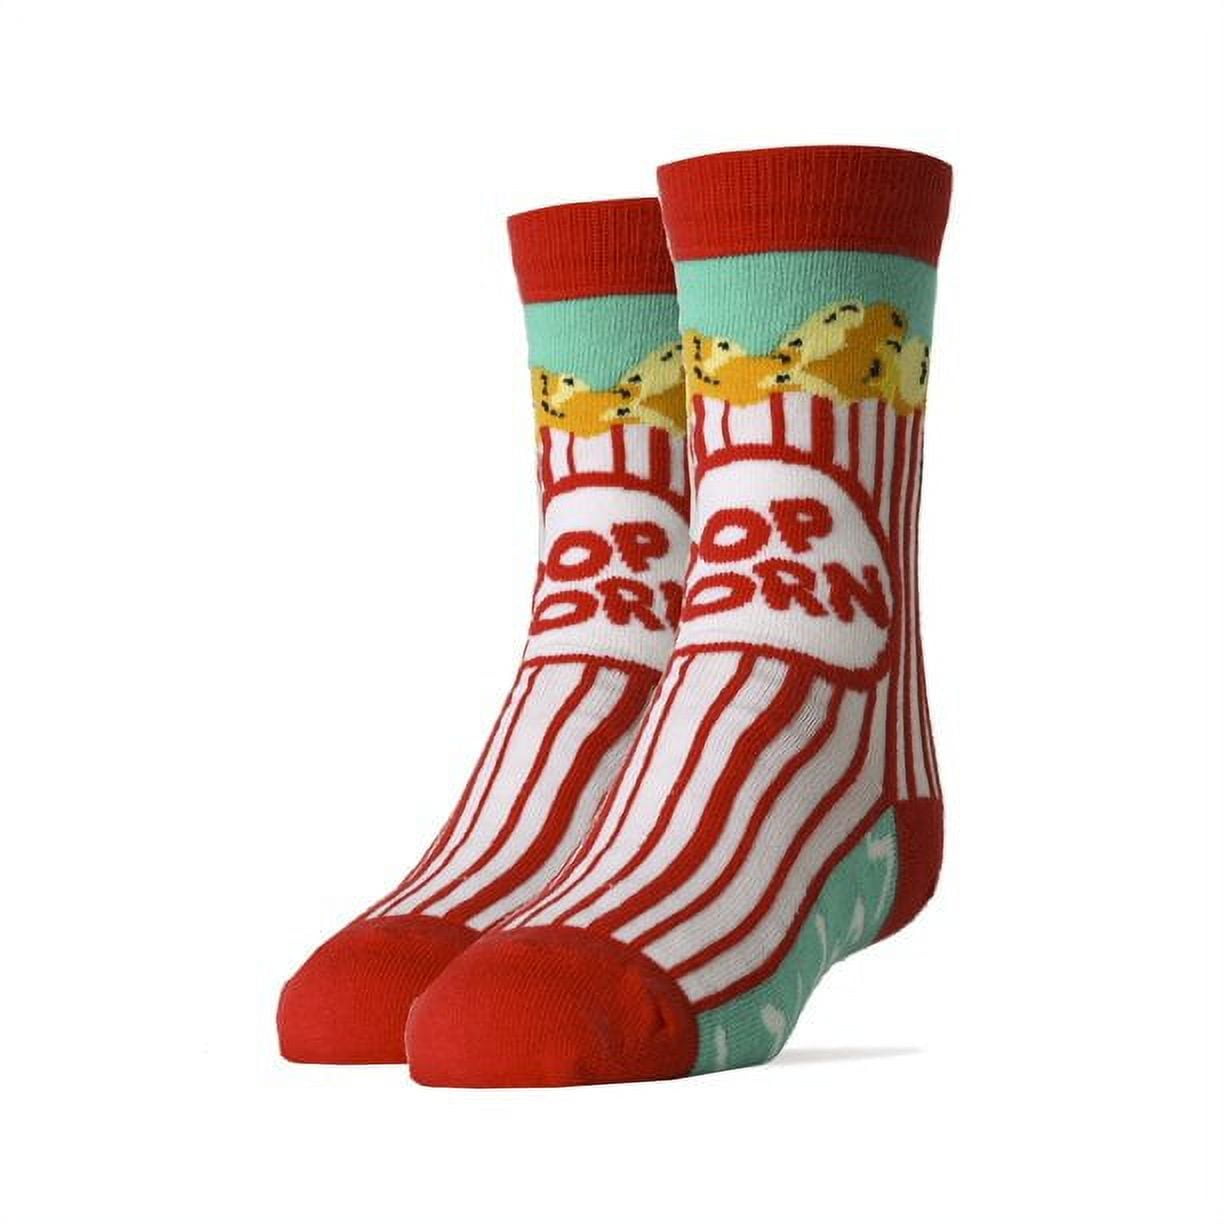  HAPPYPOP Kids Socks Crazy Socks Silly Socks Funny Socks For  Kids